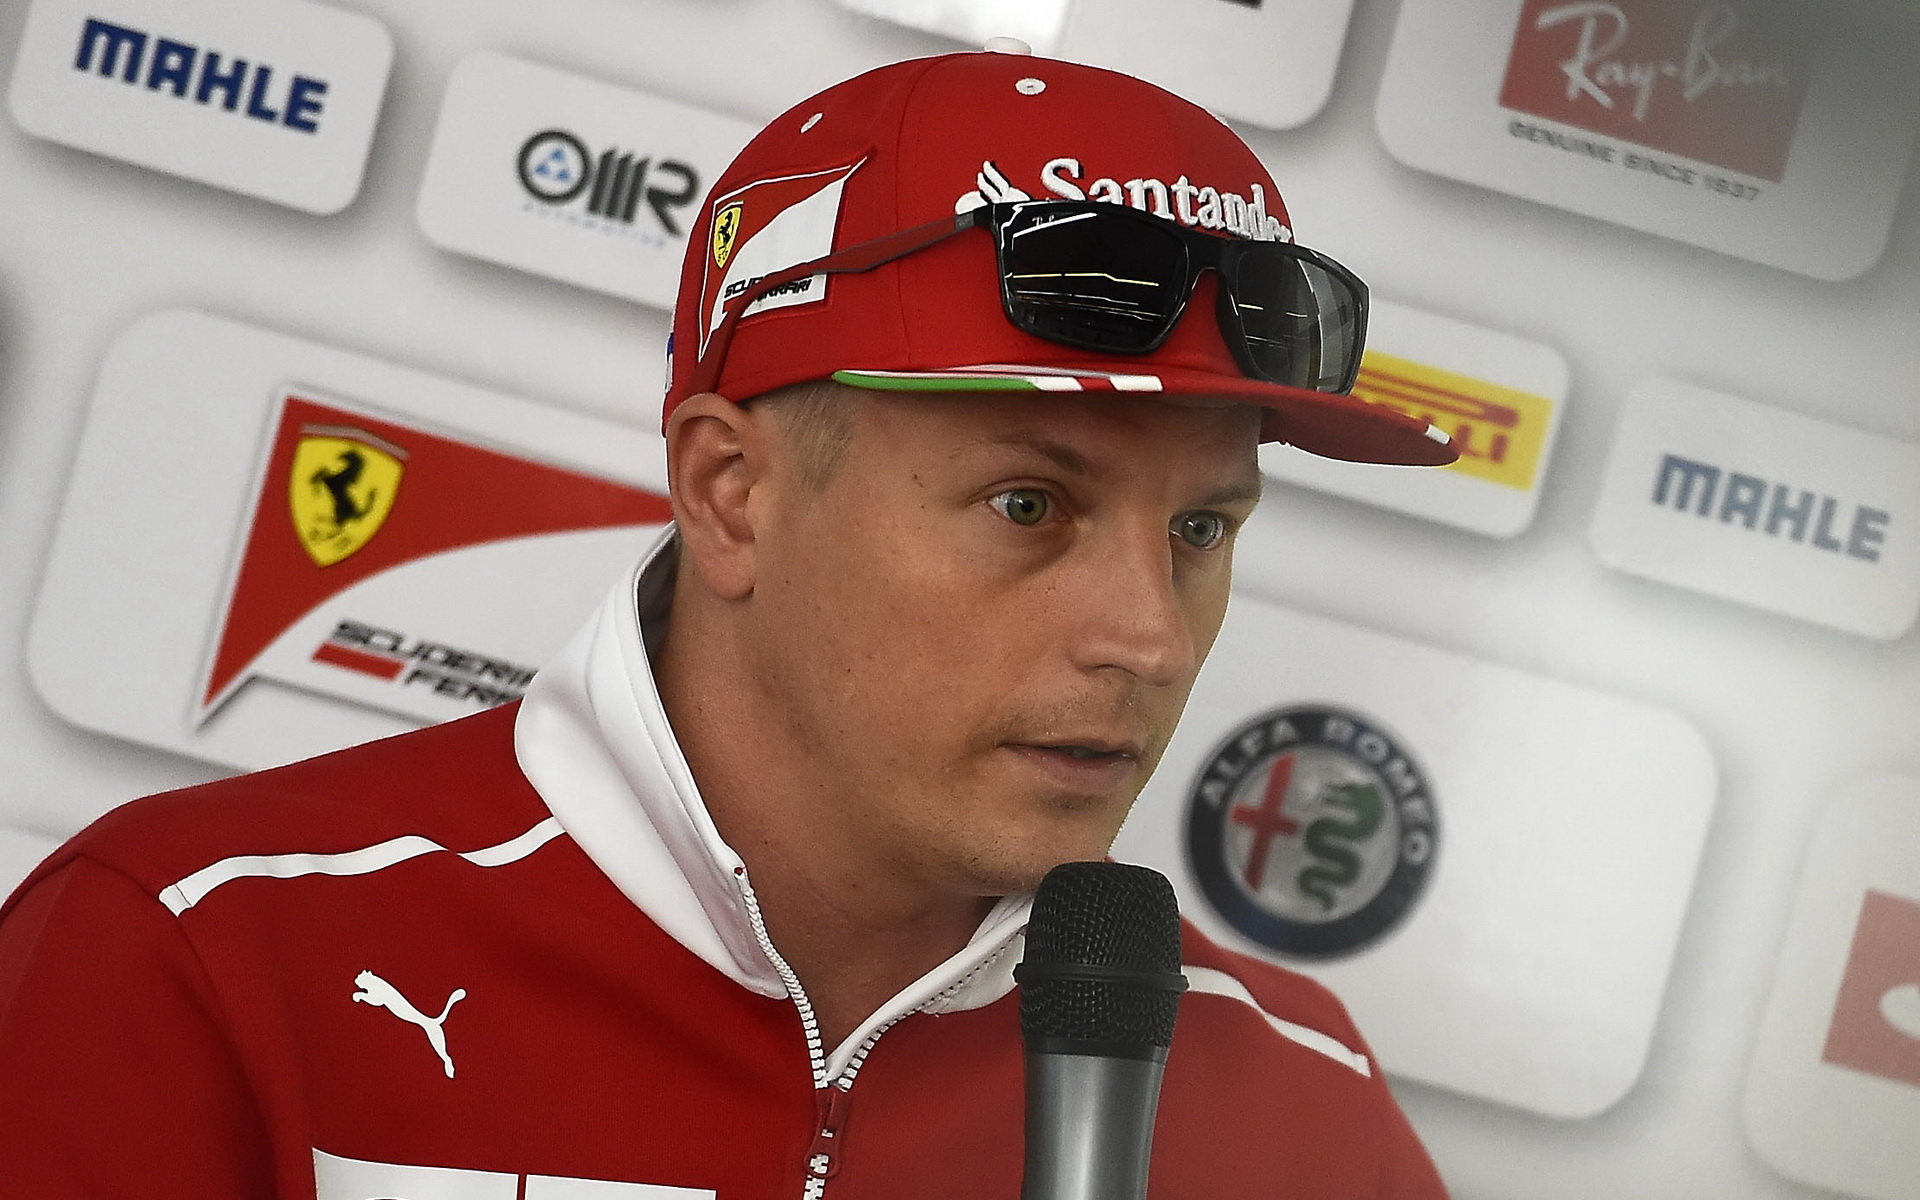 Kimi Räikkönen prezidenta Ferrari viděl poprvé až z pódia po závodě, do té doby na něj neměl čas